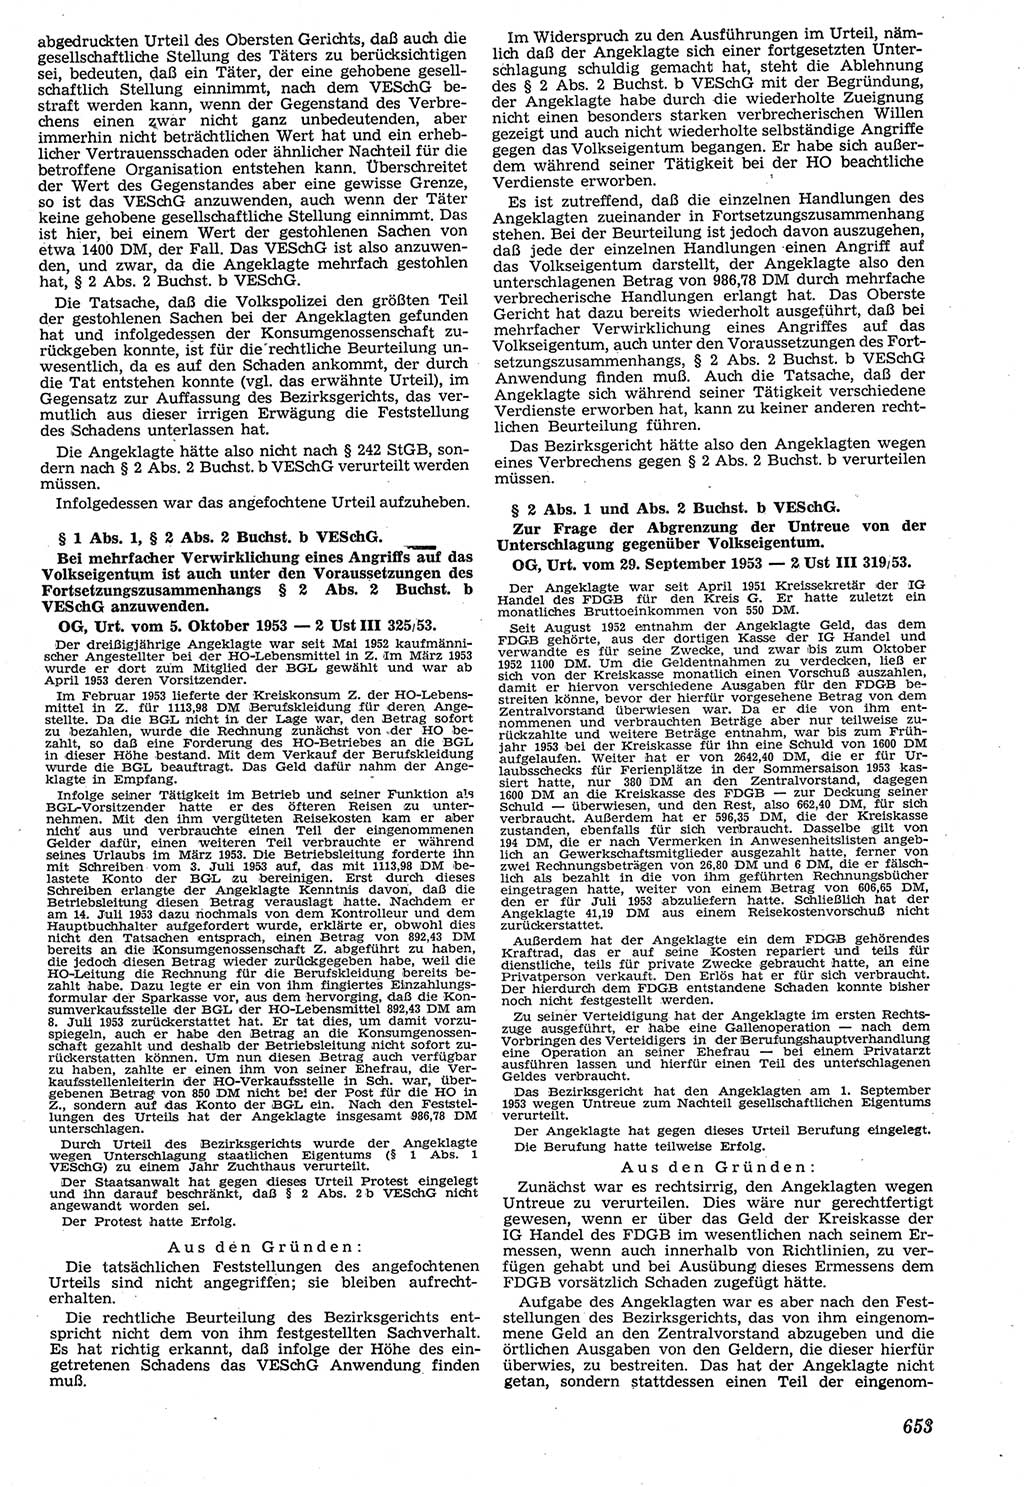 Neue Justiz (NJ), Zeitschrift für Recht und Rechtswissenschaft [Deutsche Demokratische Republik (DDR)], 7. Jahrgang 1953, Seite 653 (NJ DDR 1953, S. 653)